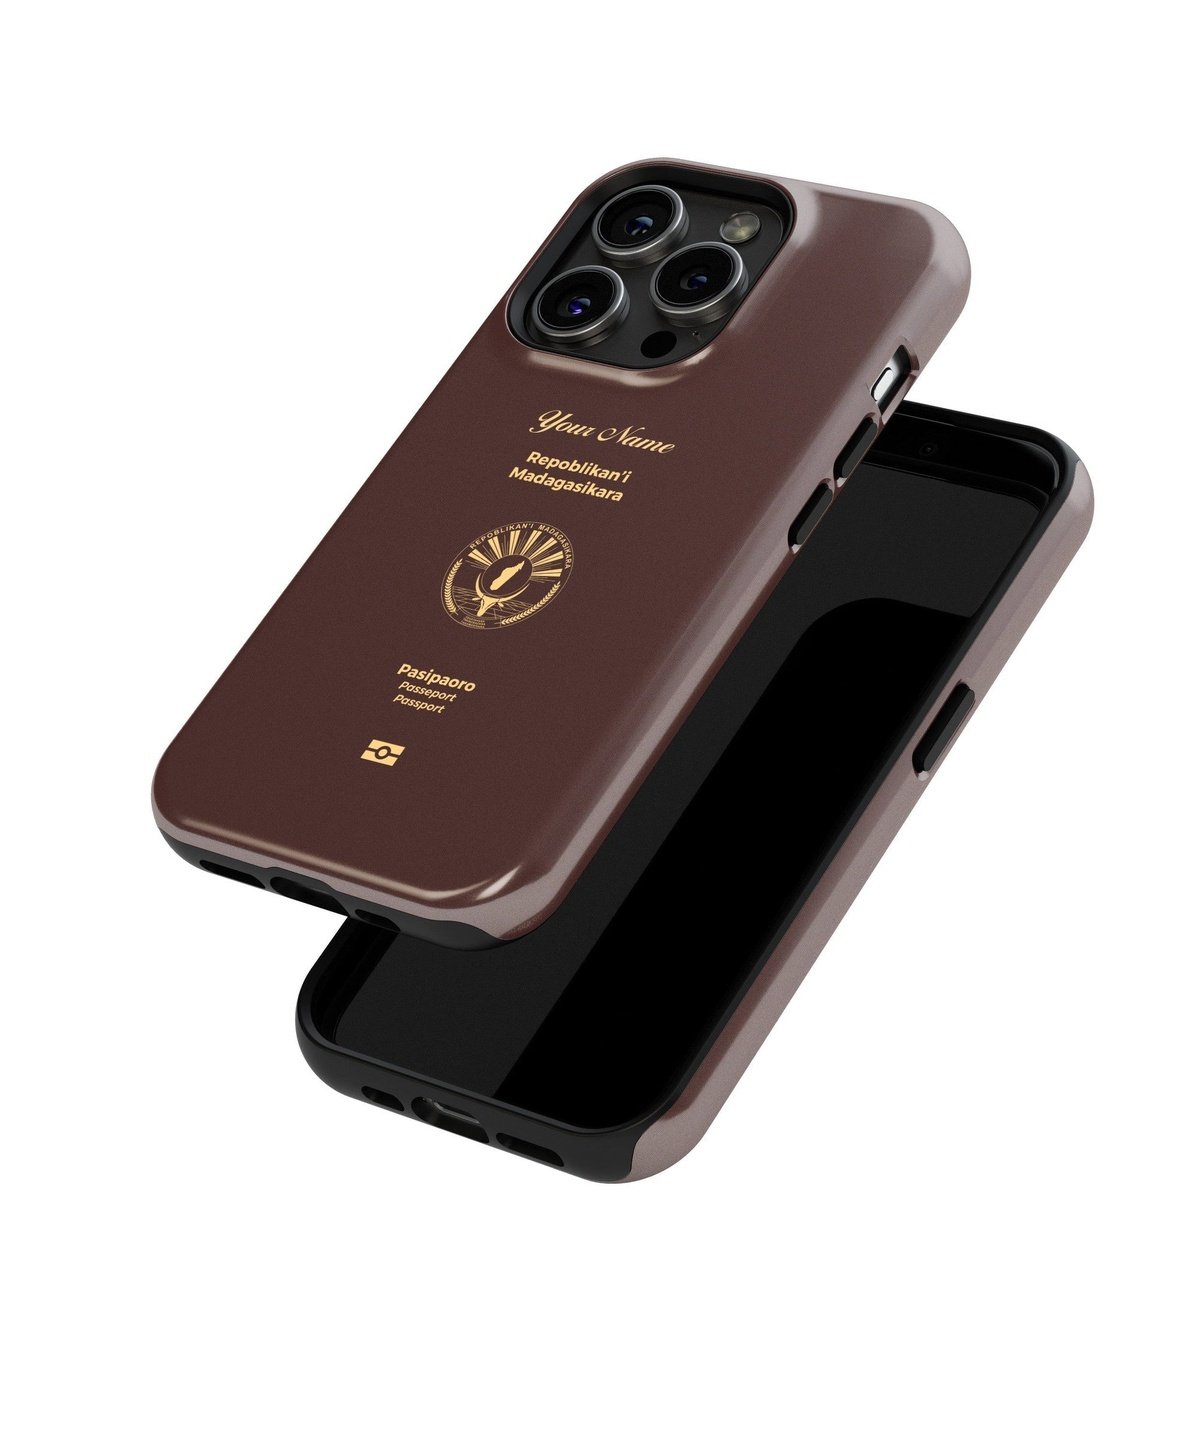 Madagascar Passport - iPhone Case